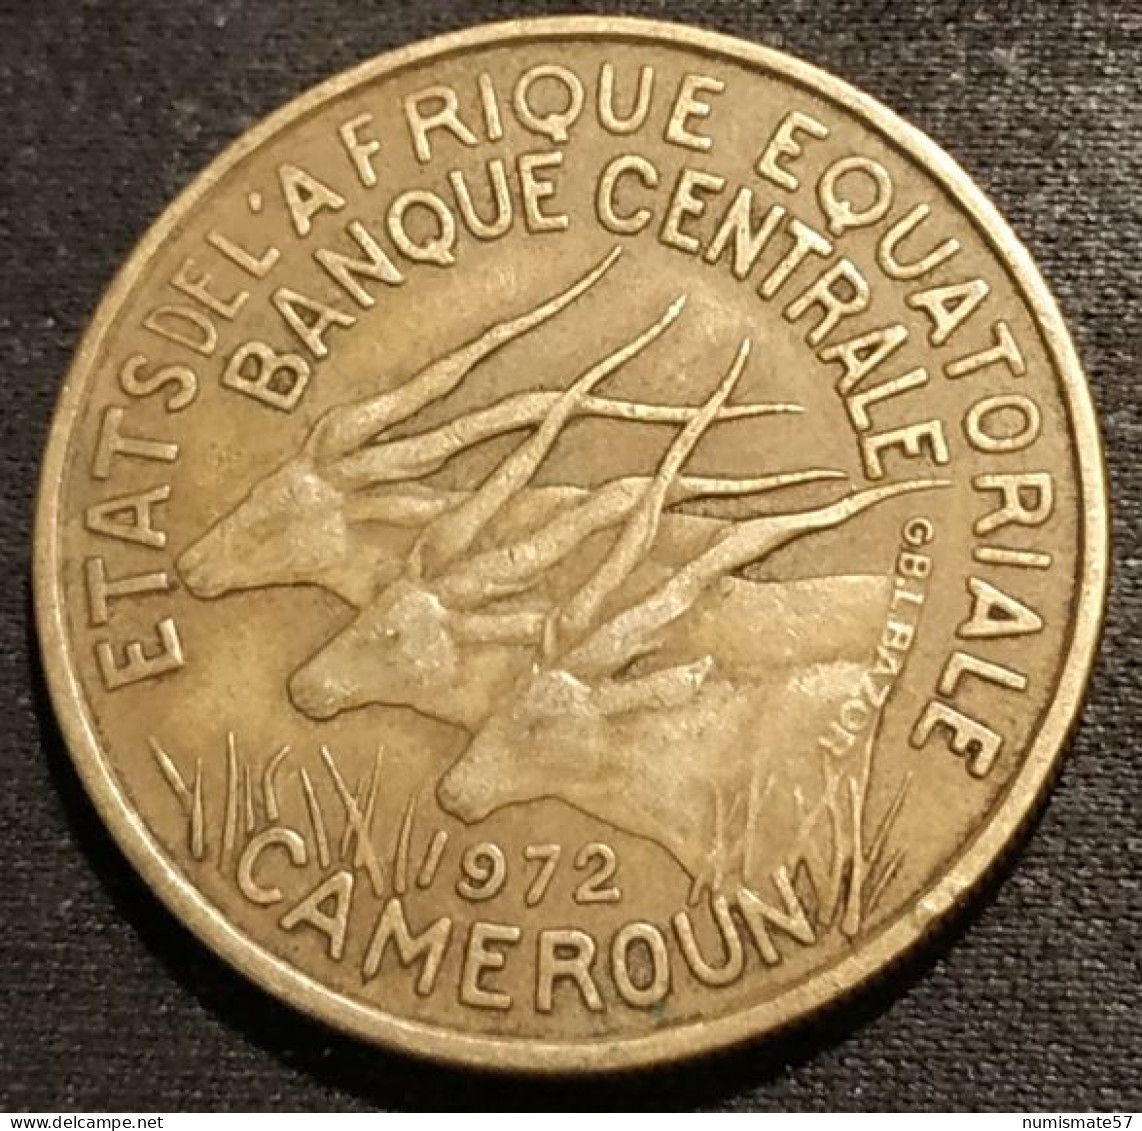 CAMEROUN - 25 FRANCS 1972 - KM 4a - ( ETATS DE L'AFRIQUE EQUATORIALE ) - Cameroon